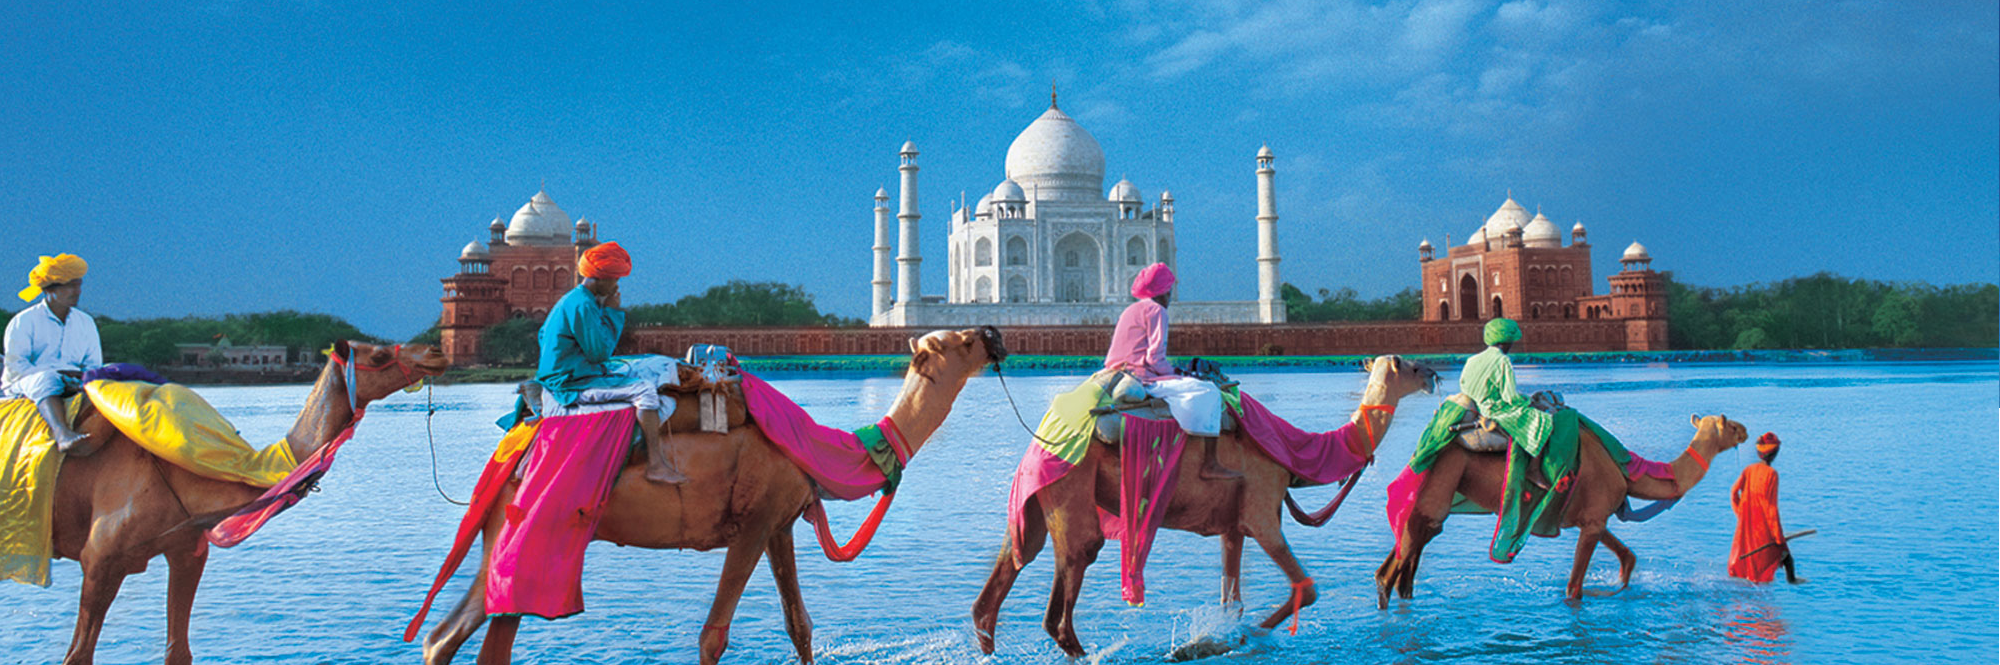 Taj Mahal Incredible India , HD Wallpaper & Backgrounds